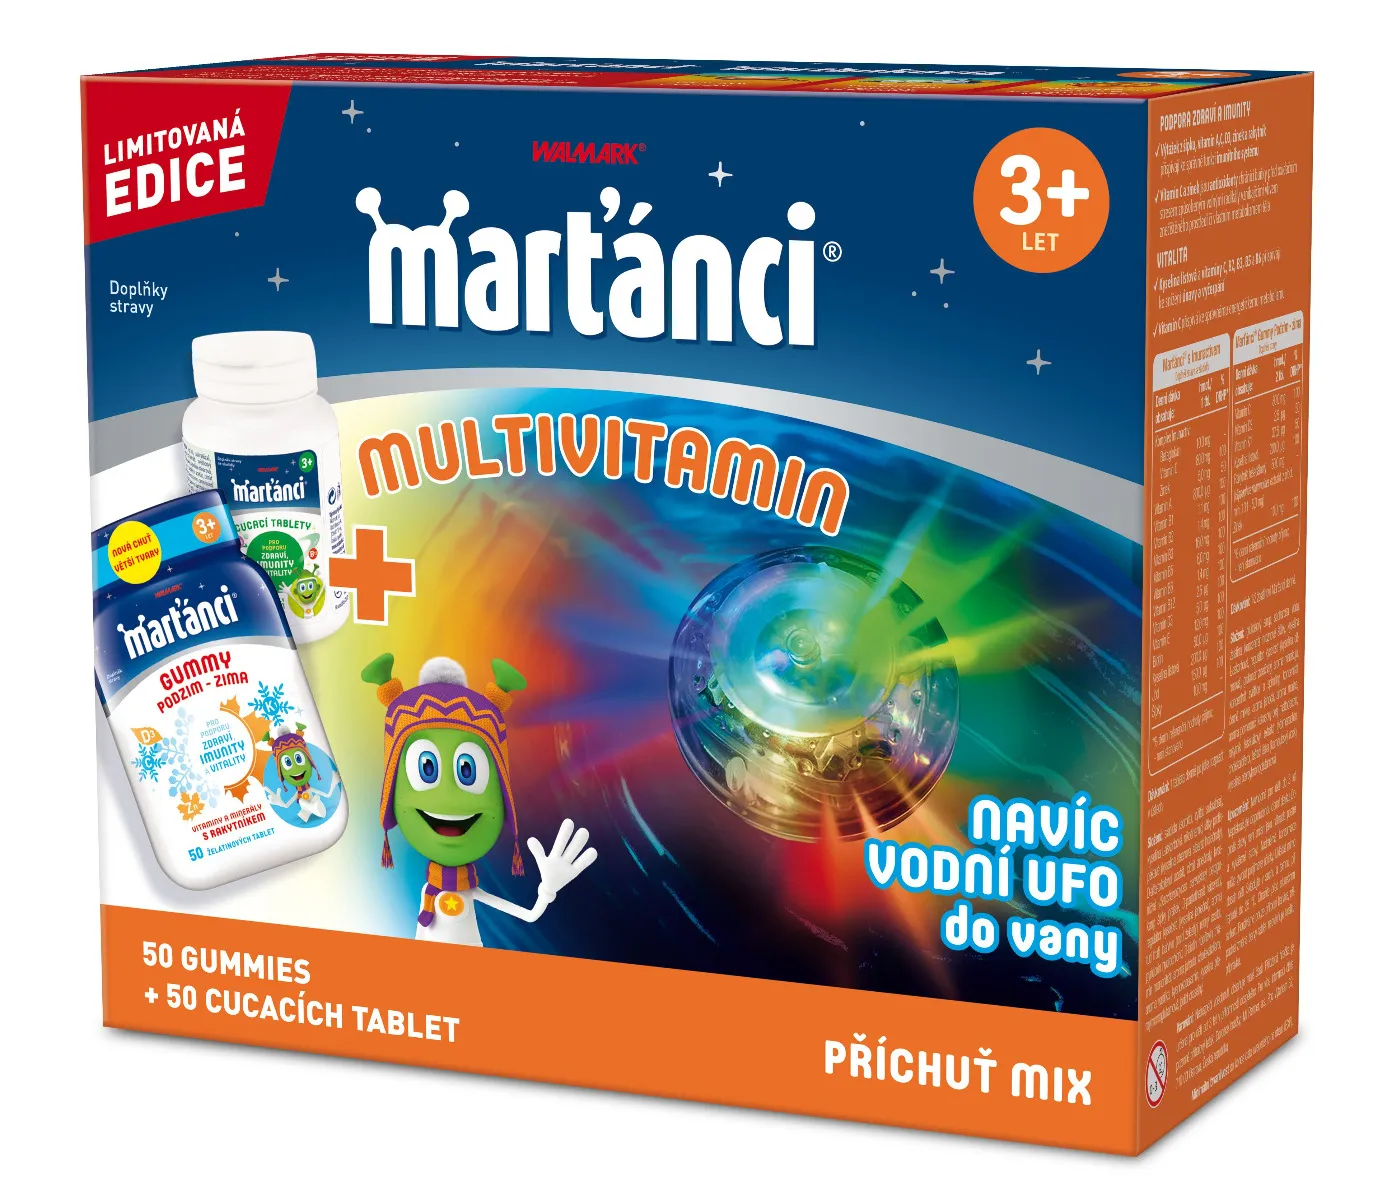 Marťánci Multivitamin MIX 50 gummies + 50 cucacích tablet + dárek